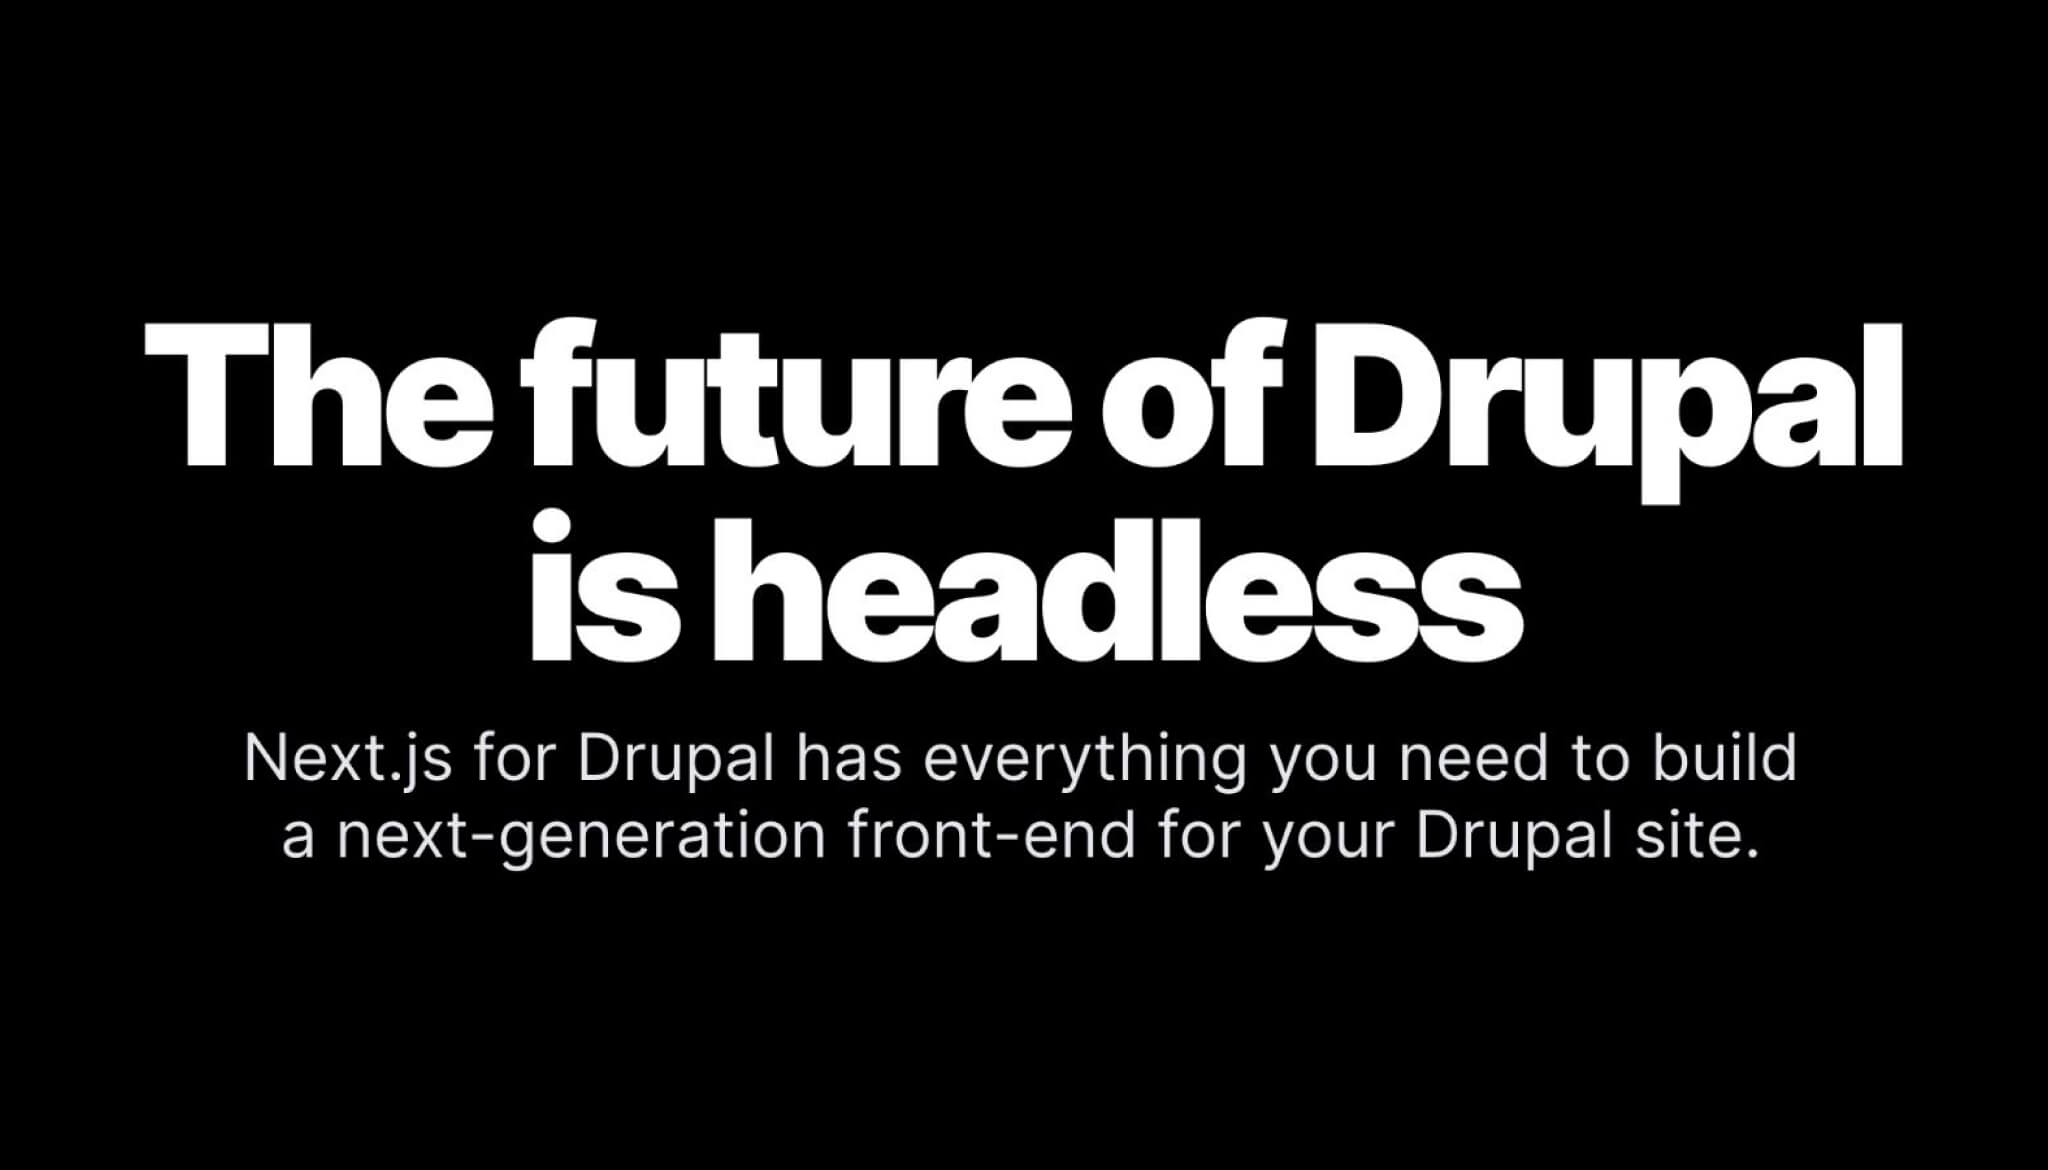 Next.js for drupal